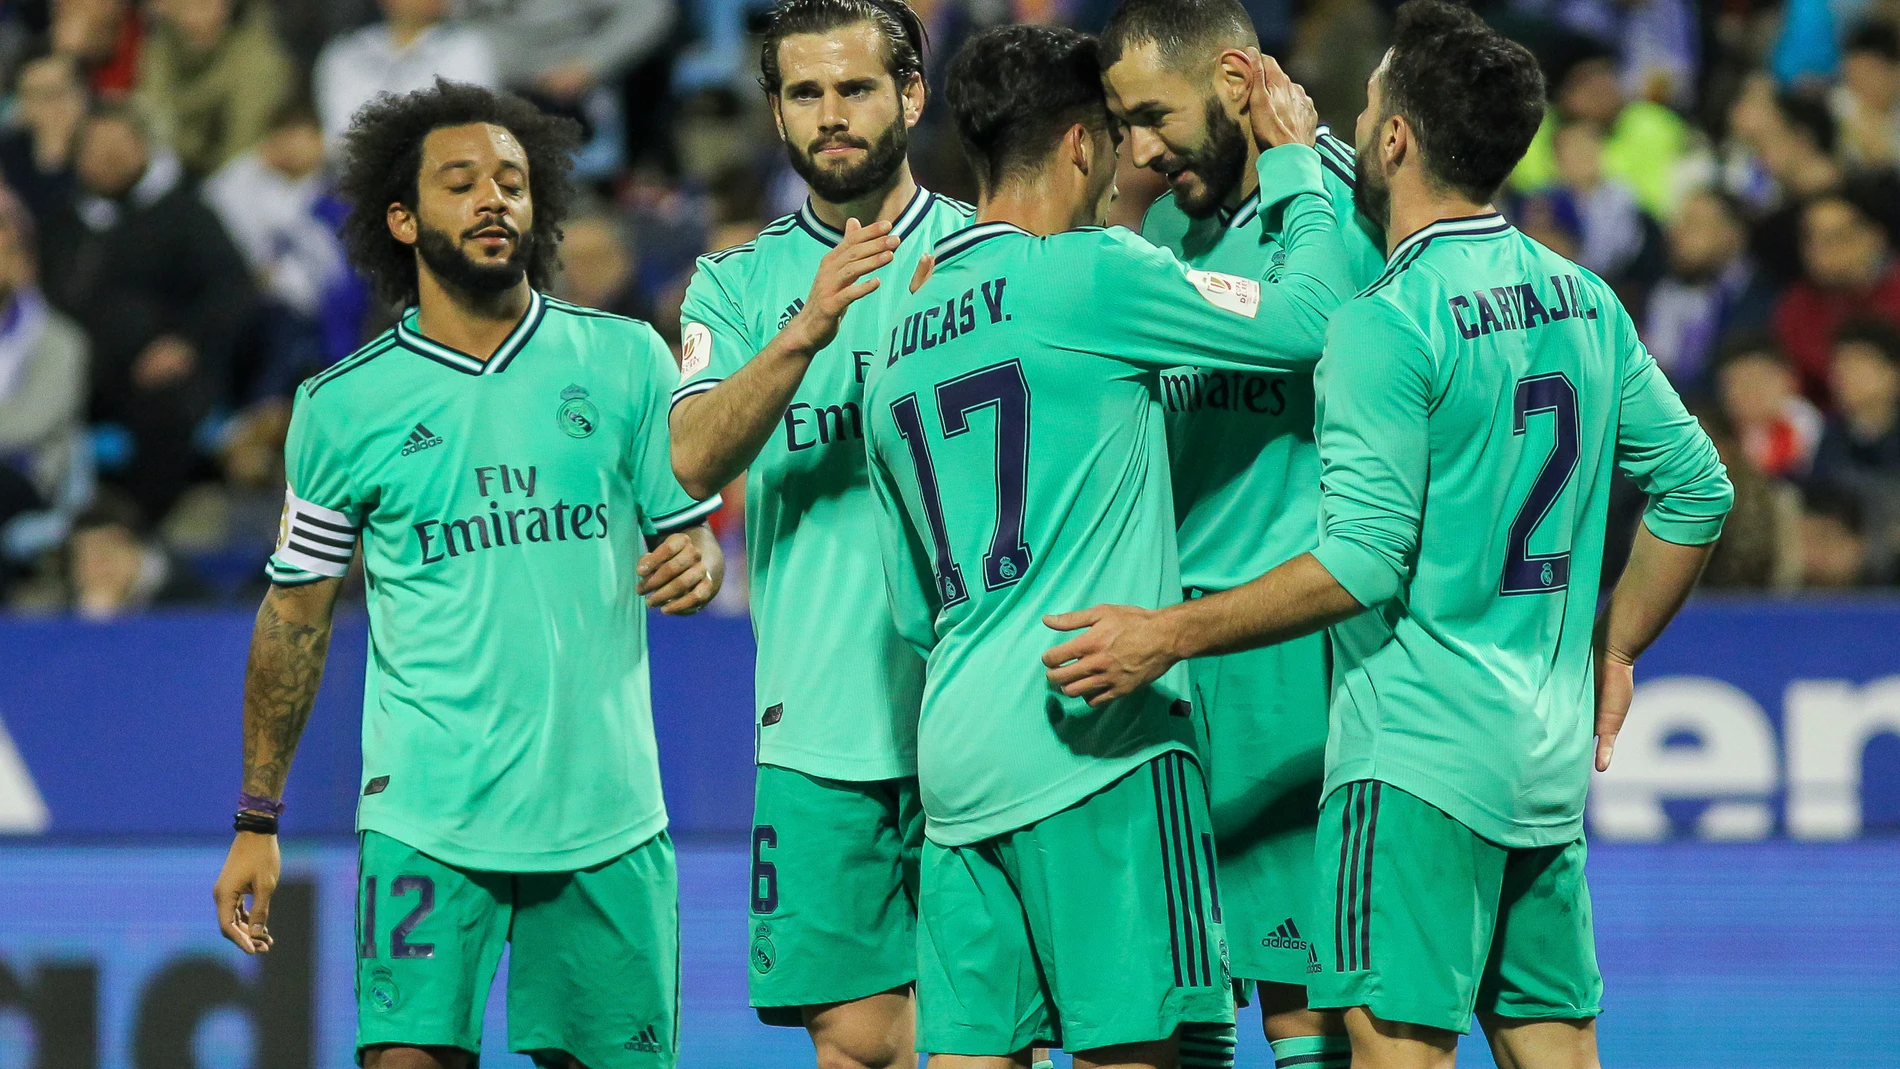 Soccer: Copa del Rey - Zaragoza v Real Madrid